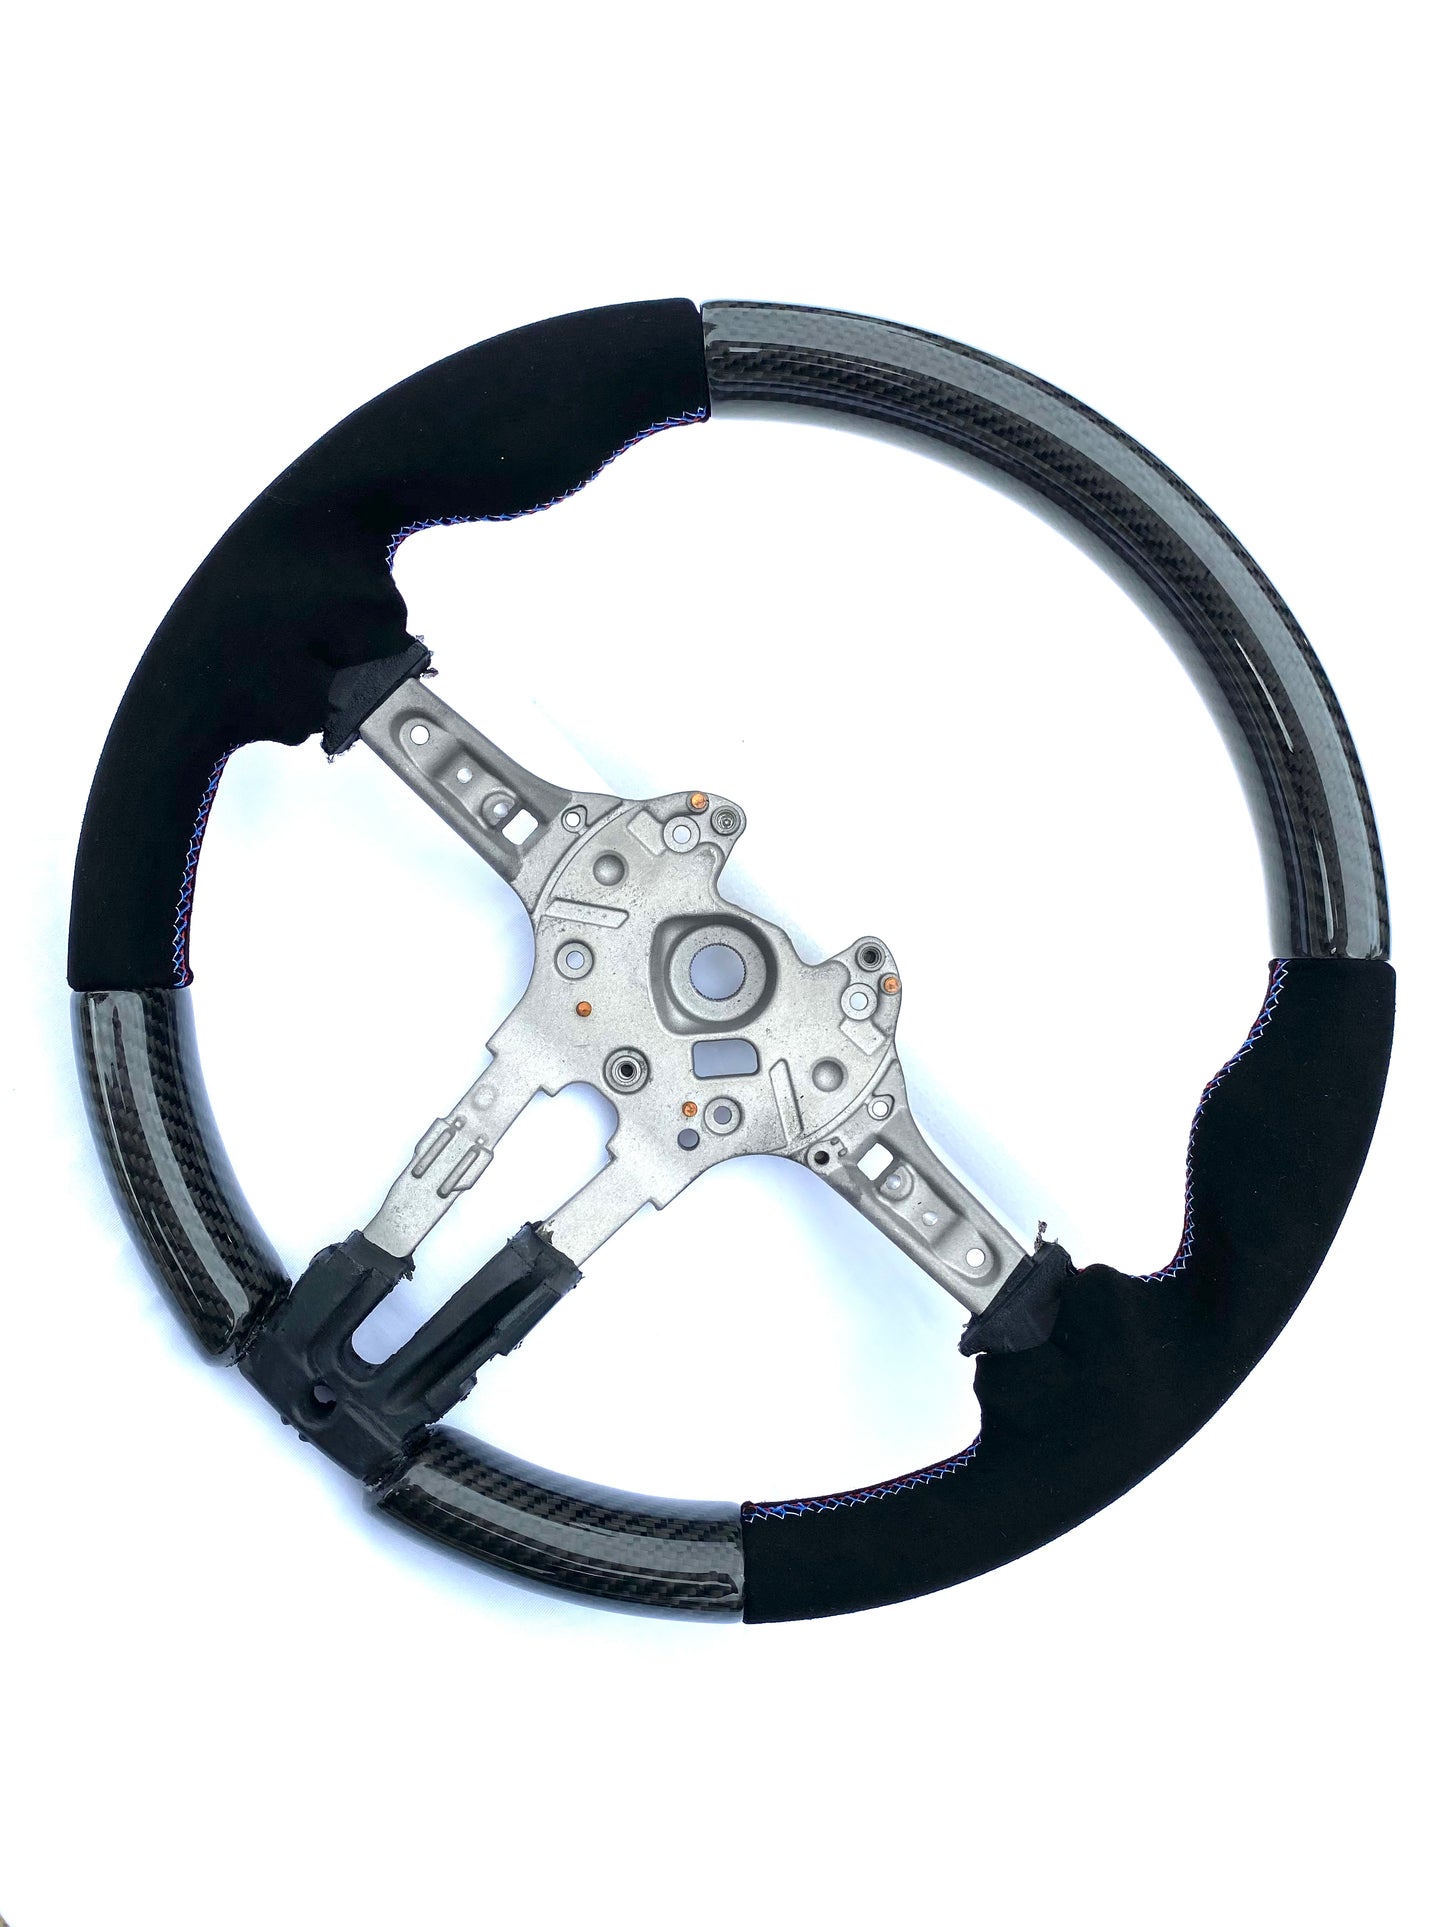 F8X carbon fiber / Alcantara custom Steering Wheel